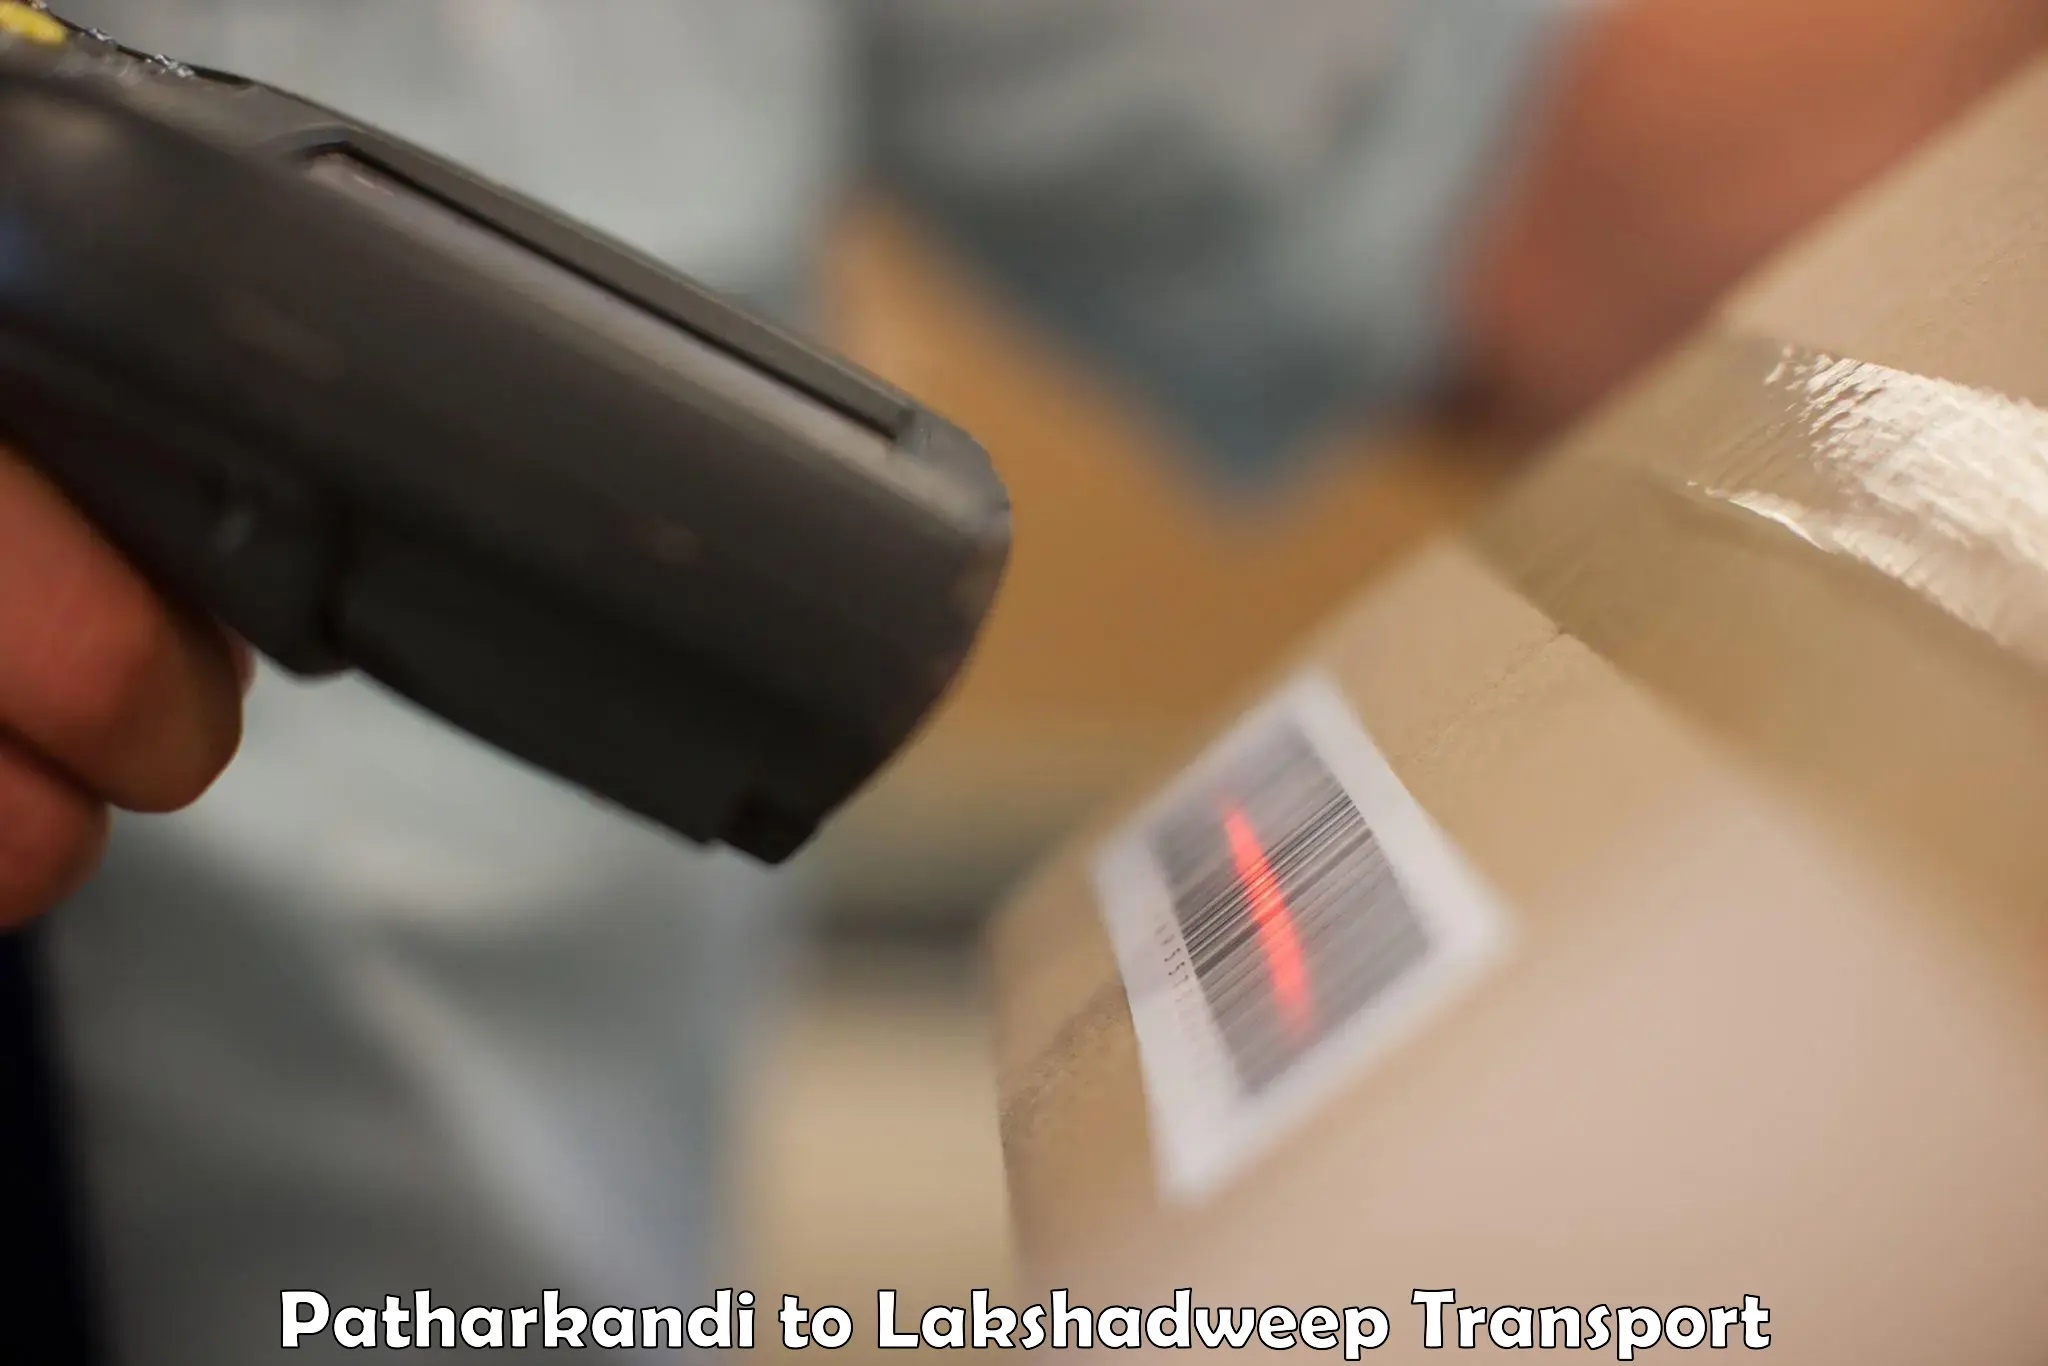 Shipping partner Patharkandi to Lakshadweep